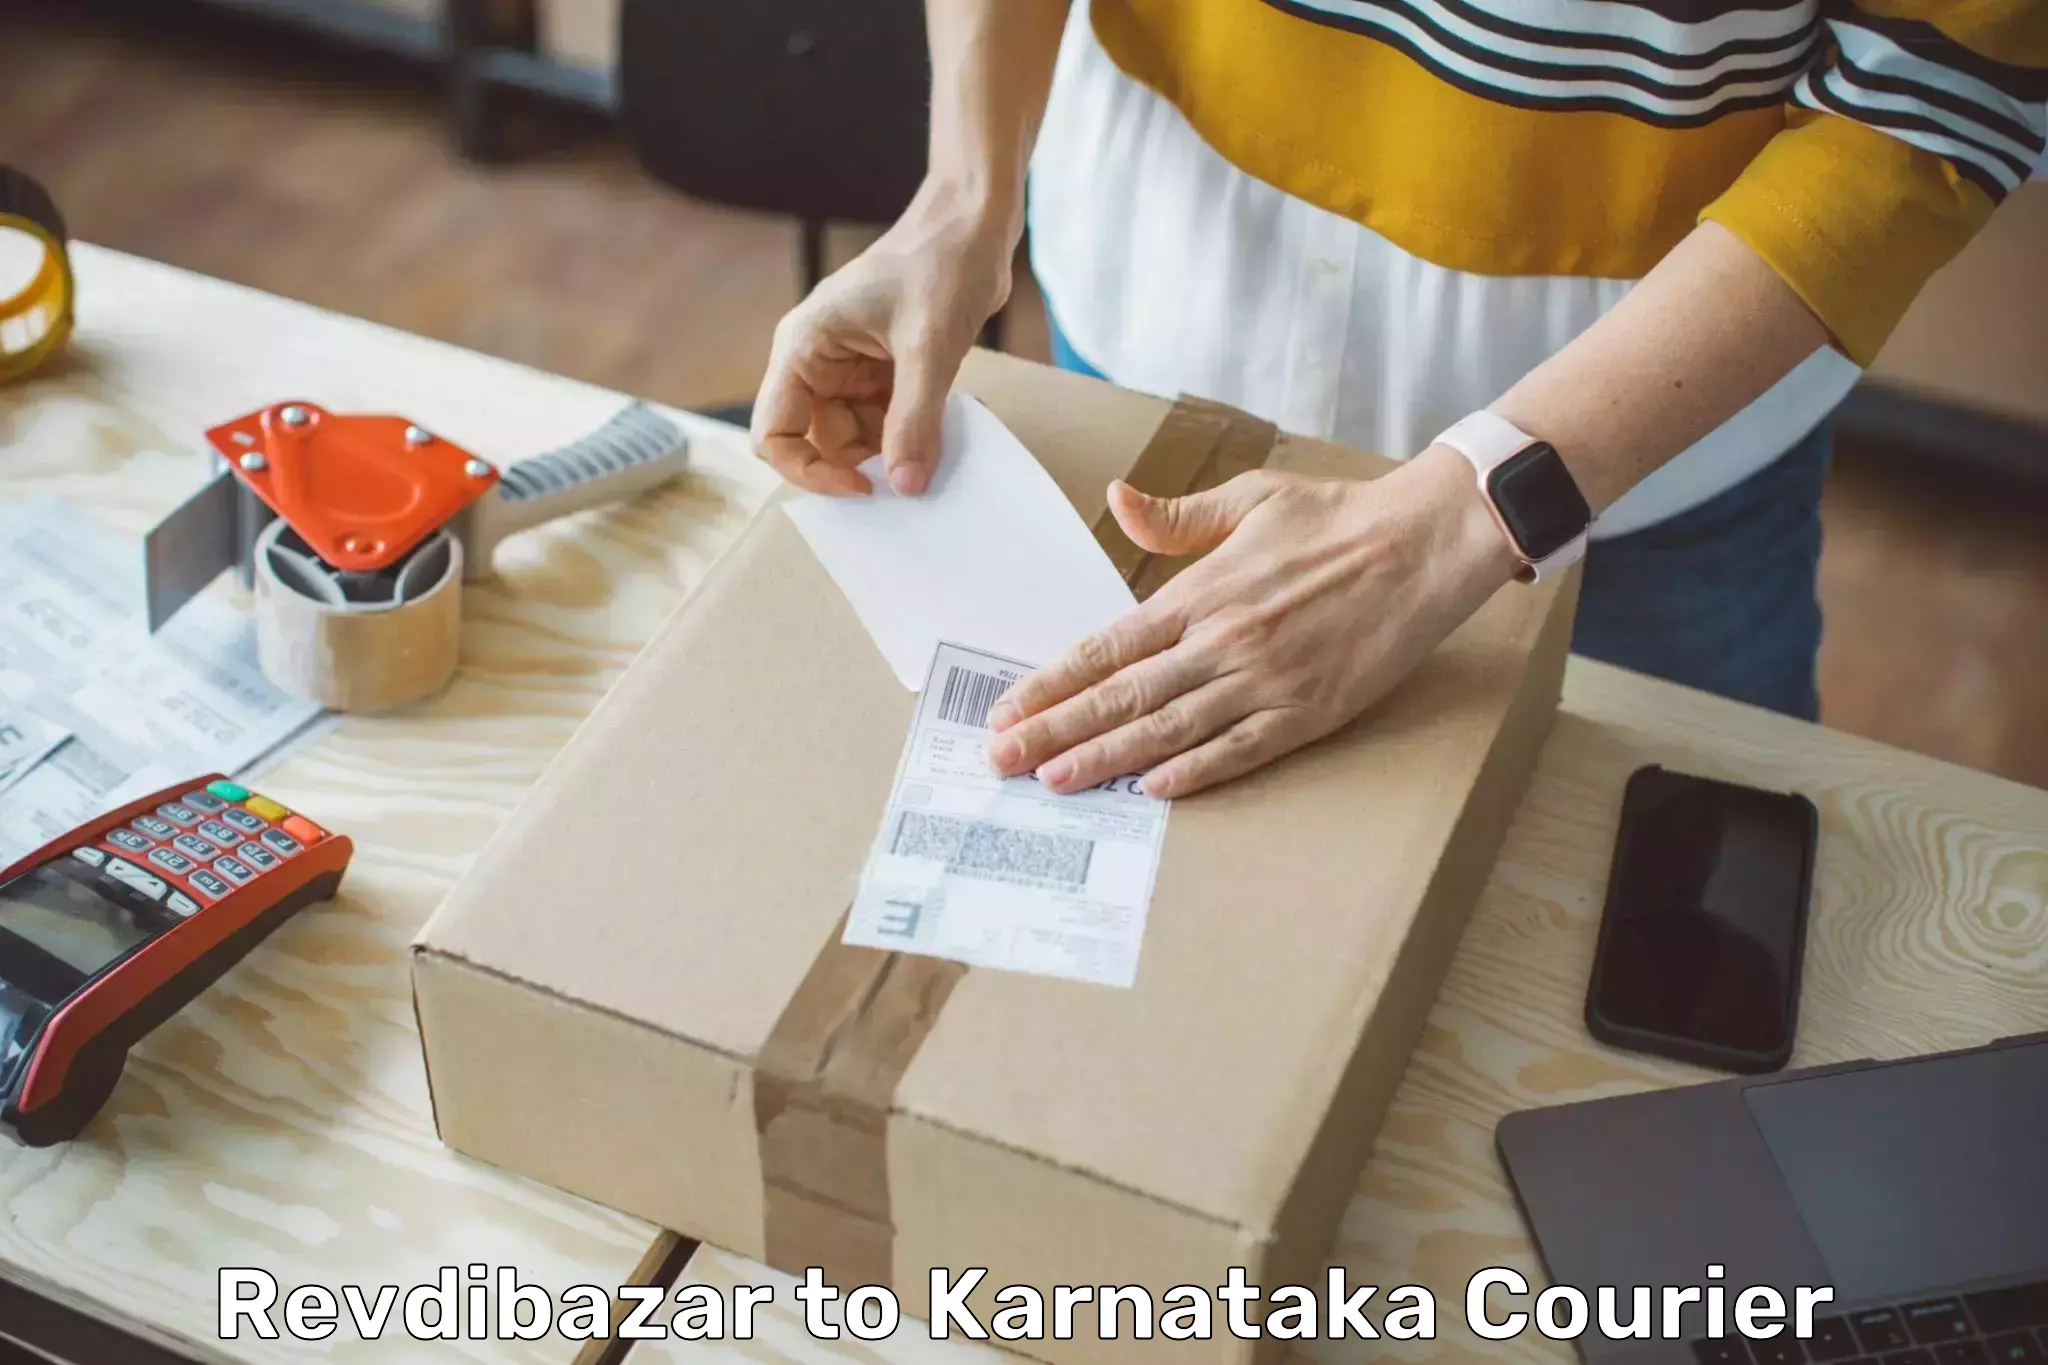 Same-day delivery solutions Revdibazar to Karnataka